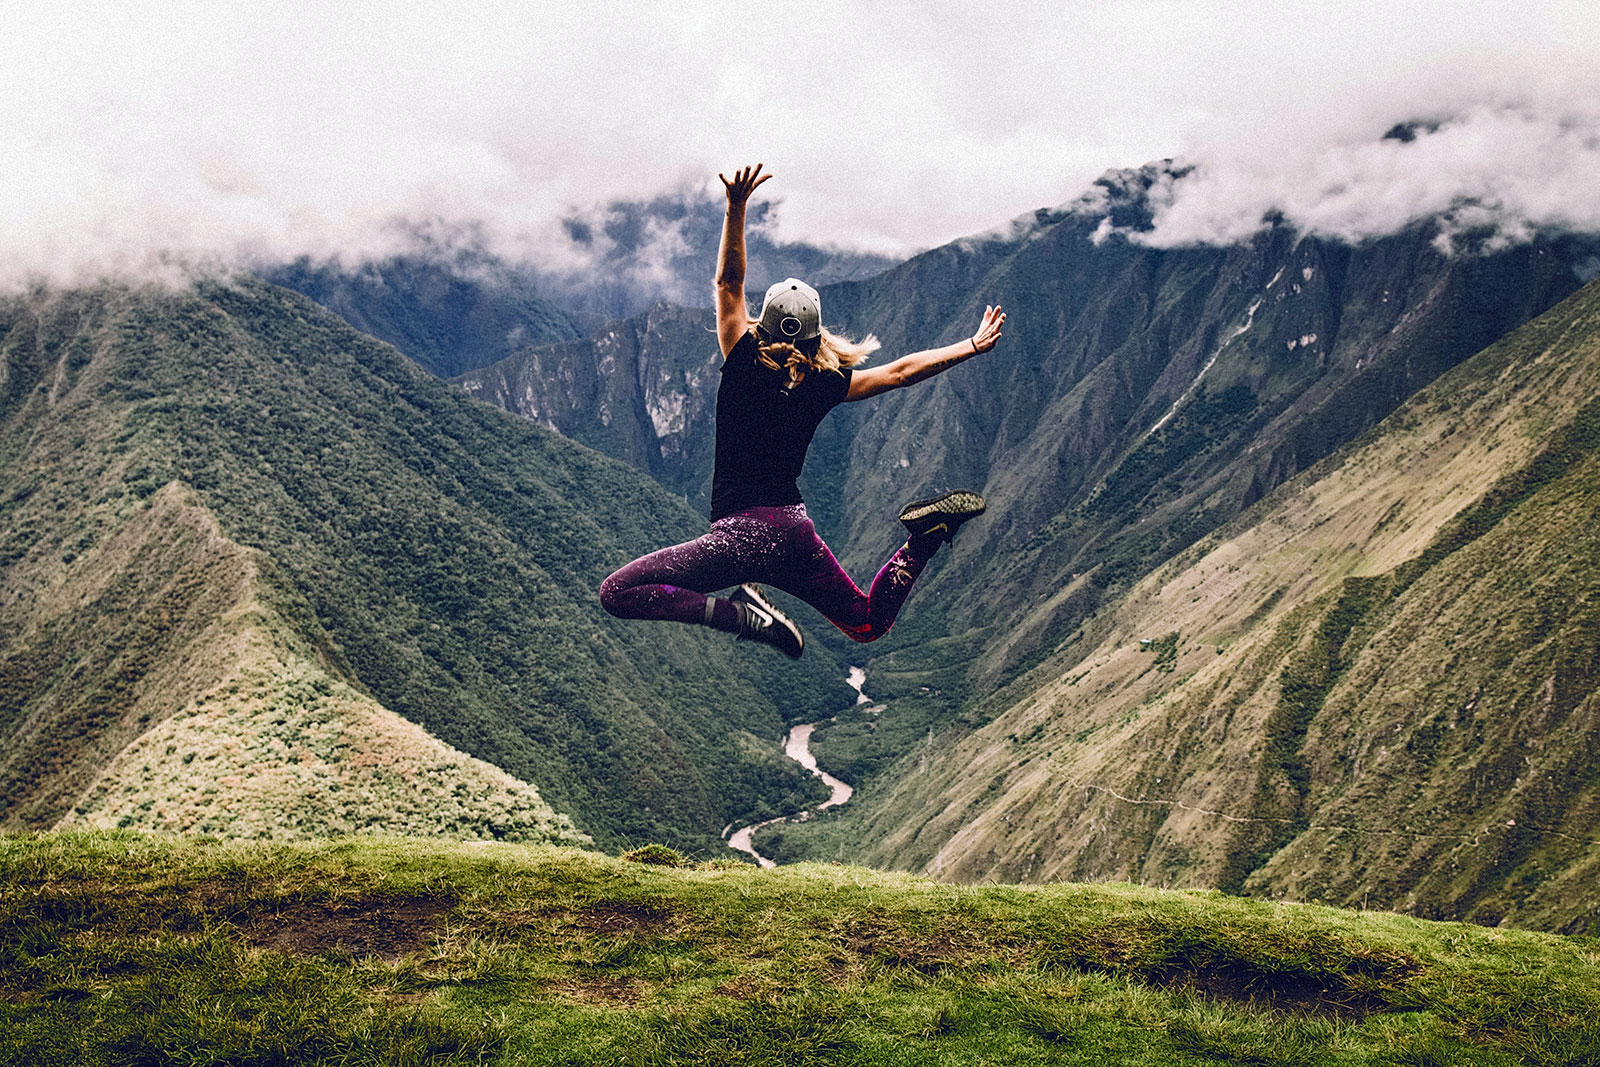 Mulher a saltar, livre, entre duas montanhas, com rio aos pés, vestidas com leggings cor roxa, ténis e t-shirt preta e boné cinzento.